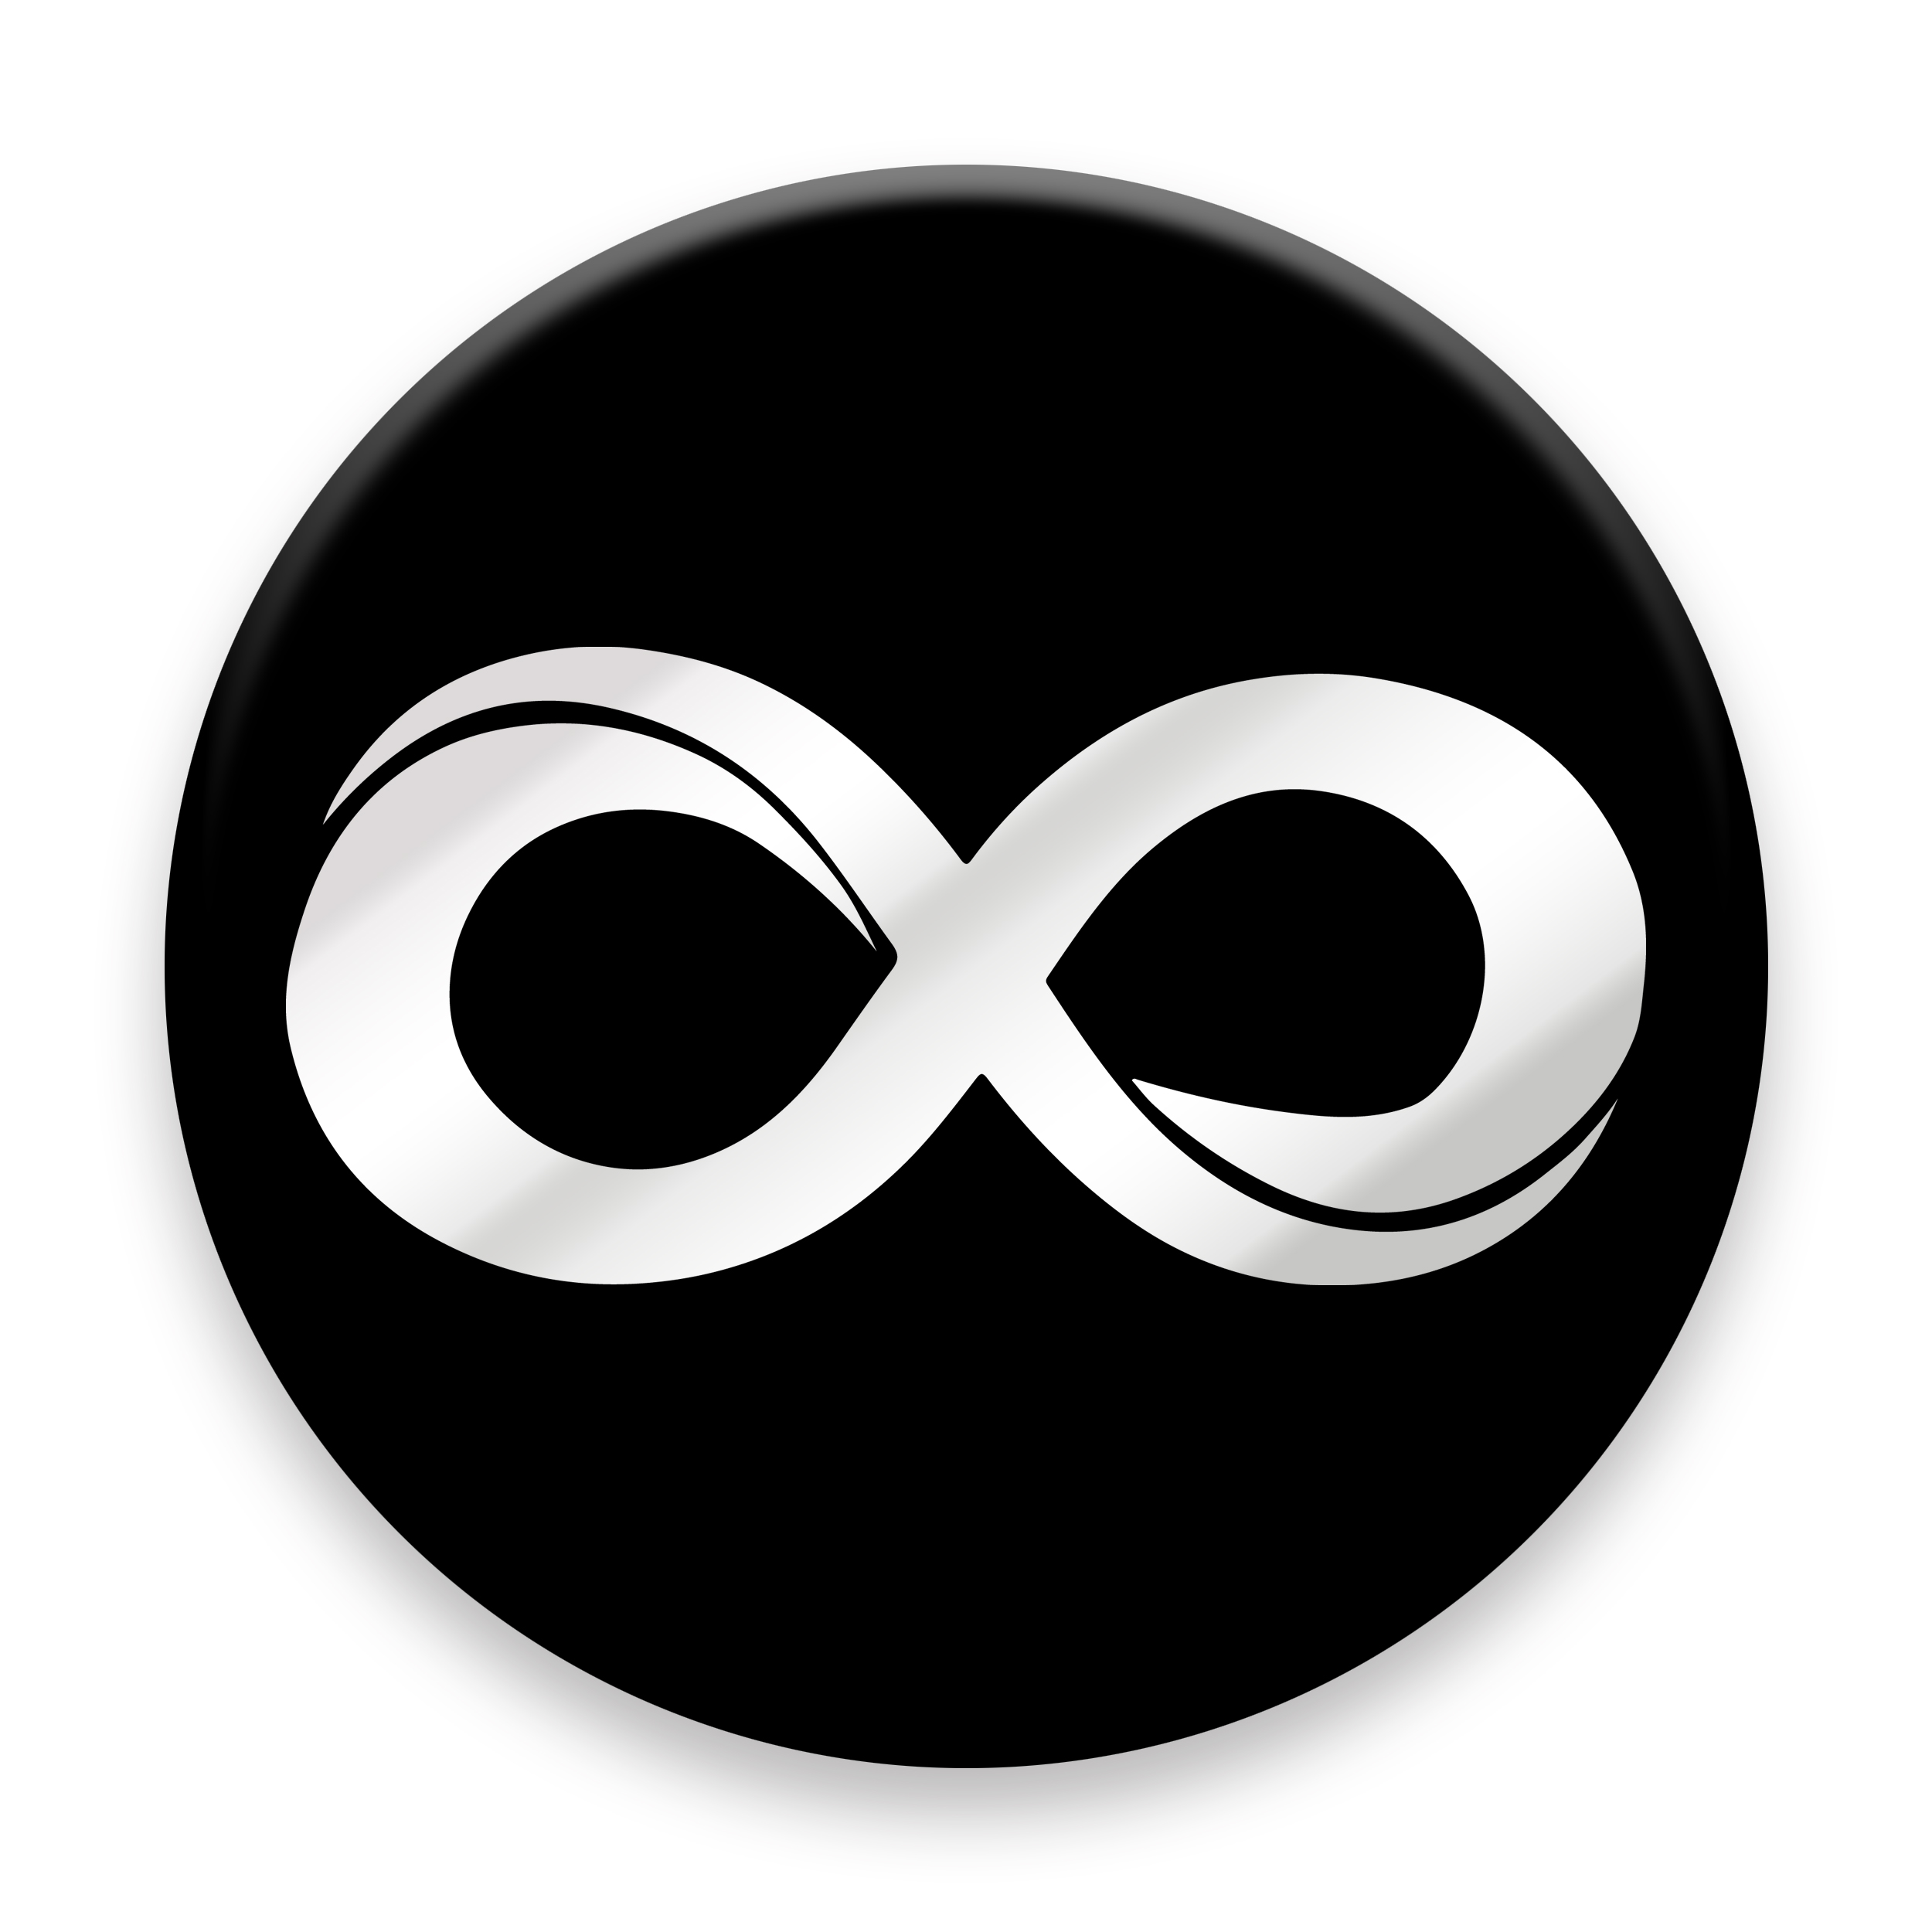 برچسب موبایل مدل Infinity Icon مناسب برای پایه نگهدارنده مغناطیسی